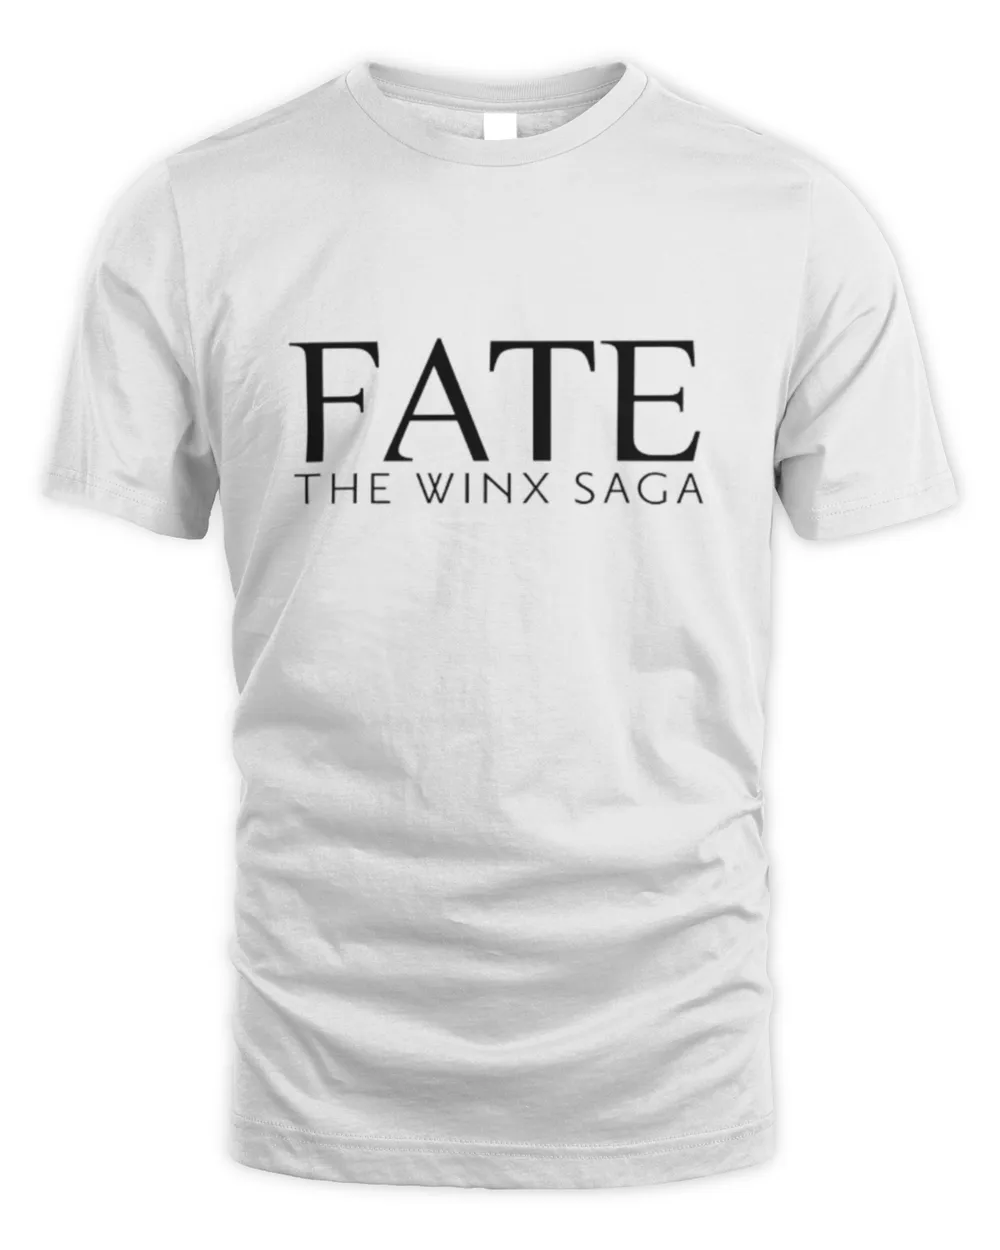 Fate the winx saga T-Shirt